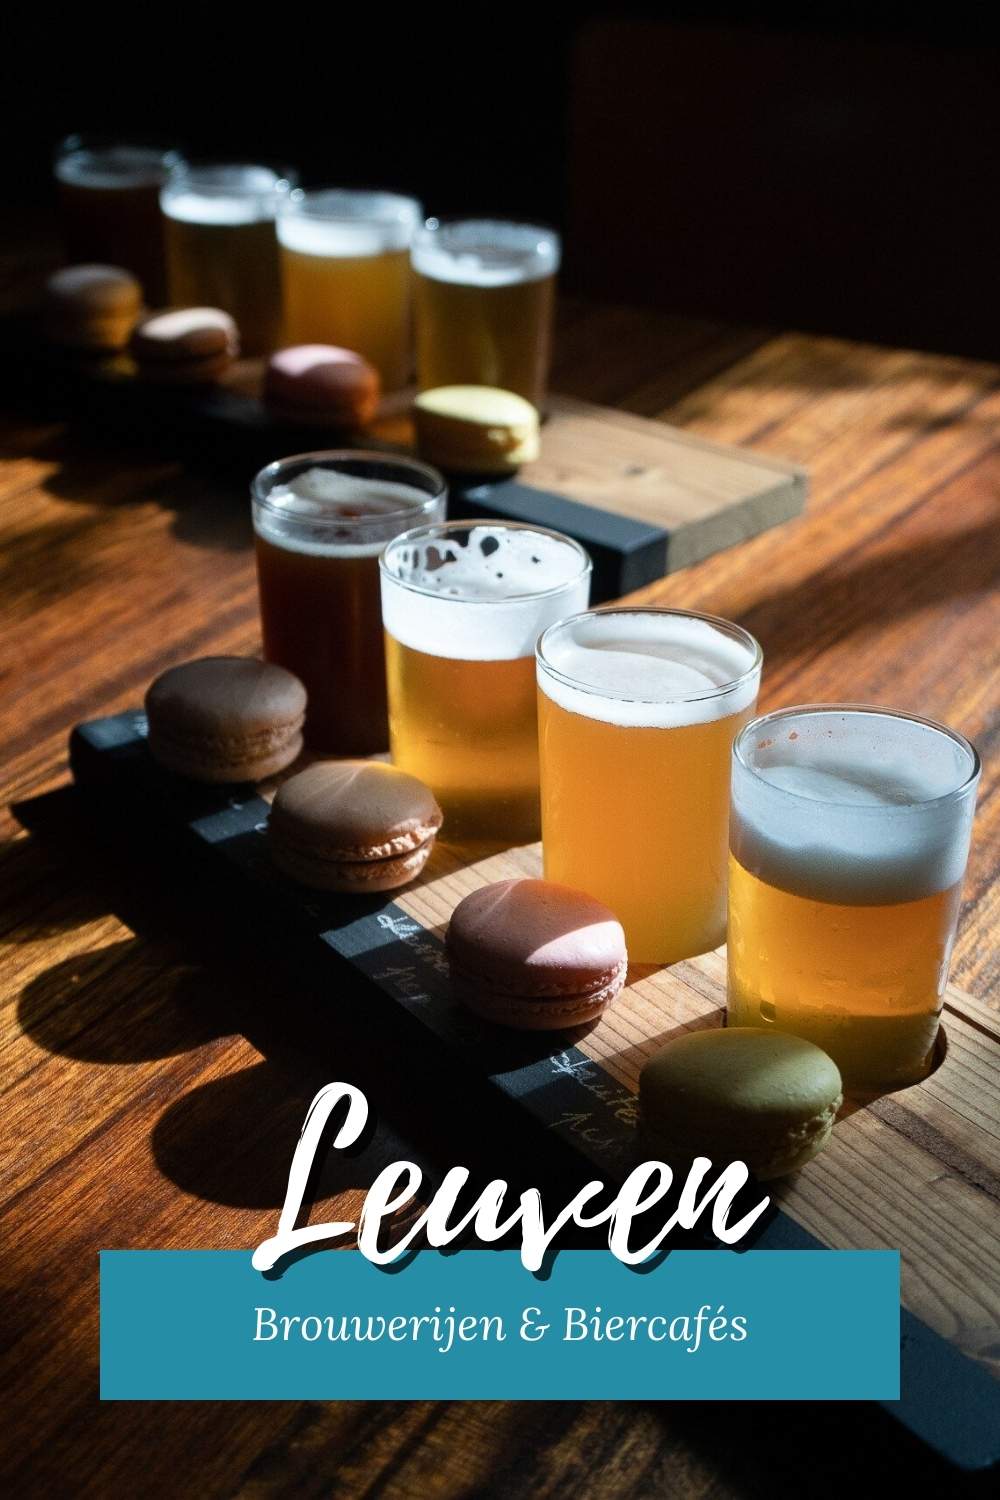 Bierstad Leuven: biercafés en brouwerijen in Leuven | Mooistestedentrips.nl